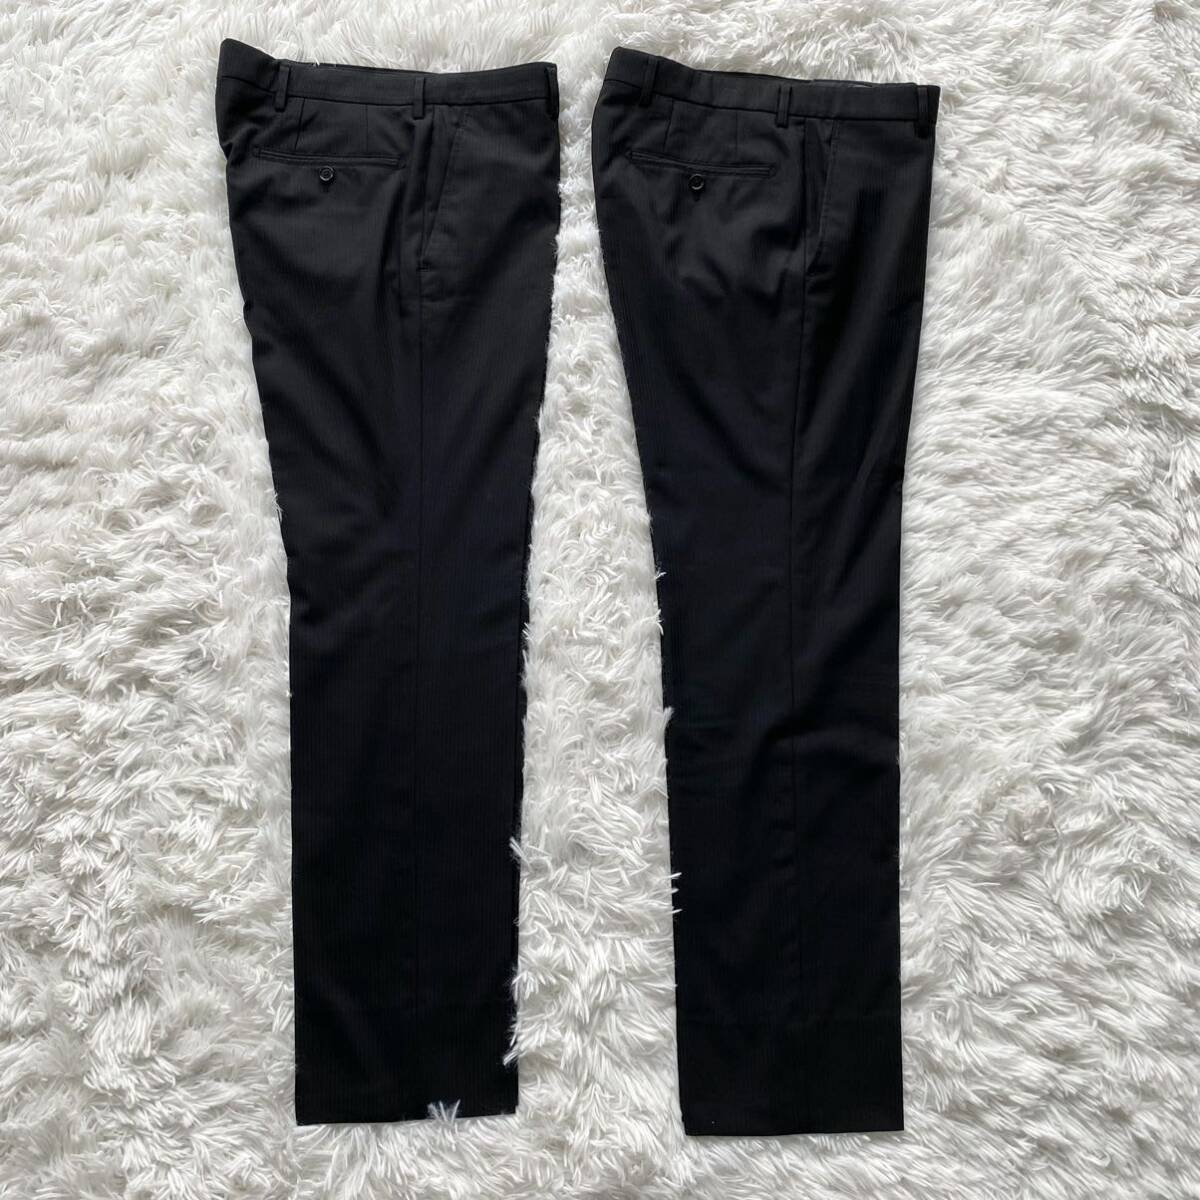 【2パンツ】AOKI LESMUES アオキ レミュー スーツ セットアップ パンツ2本セット 黒 ブラック 90-74-165 Y4 Sサイズ プレミアムウォッシュの画像7